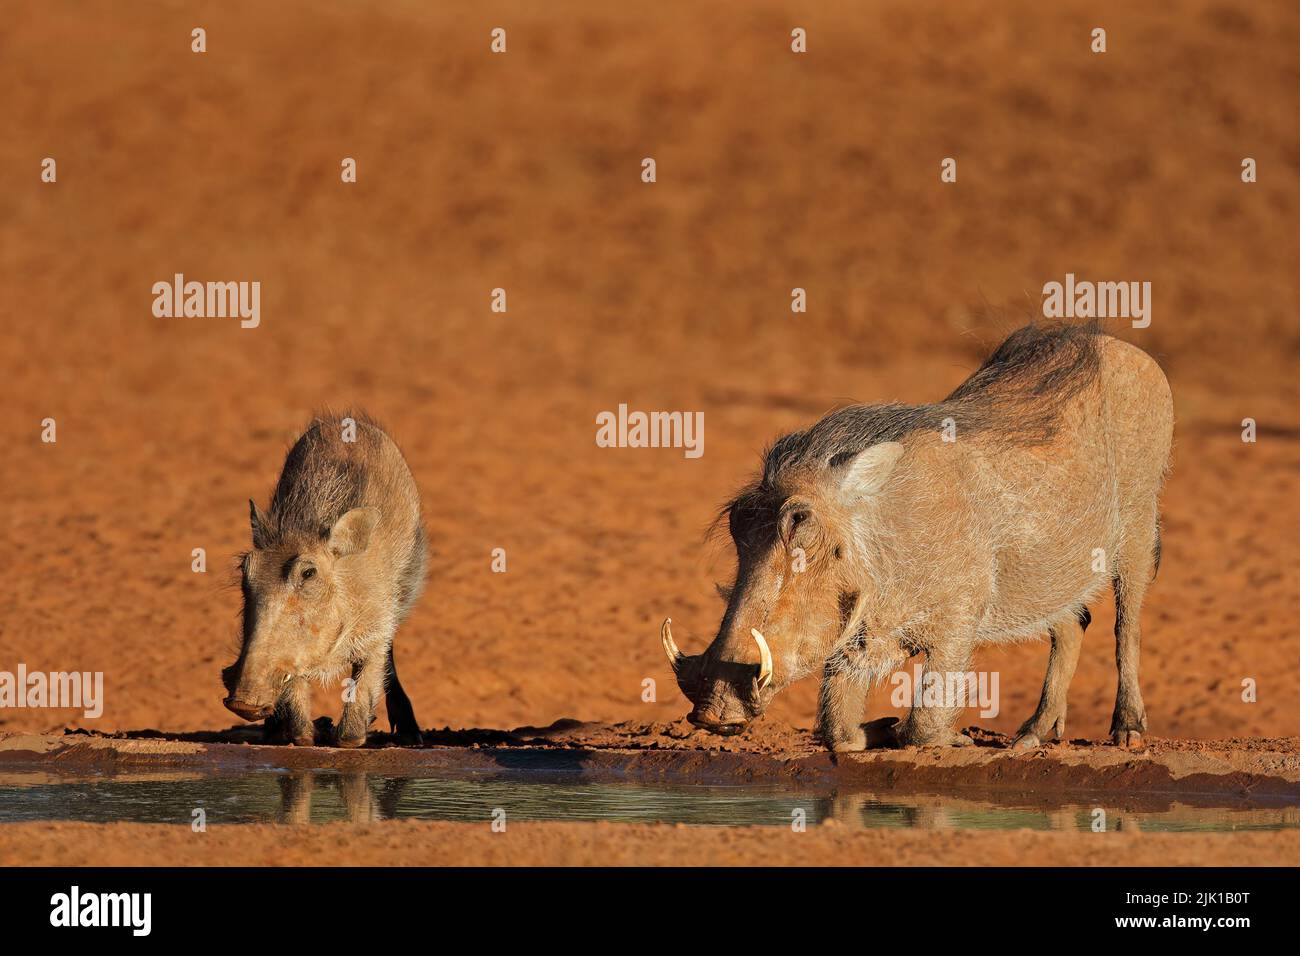 Les warthogs (Phacochoerus africanus) buvant dans un trou d'eau, en Afrique du Sud Banque D'Images